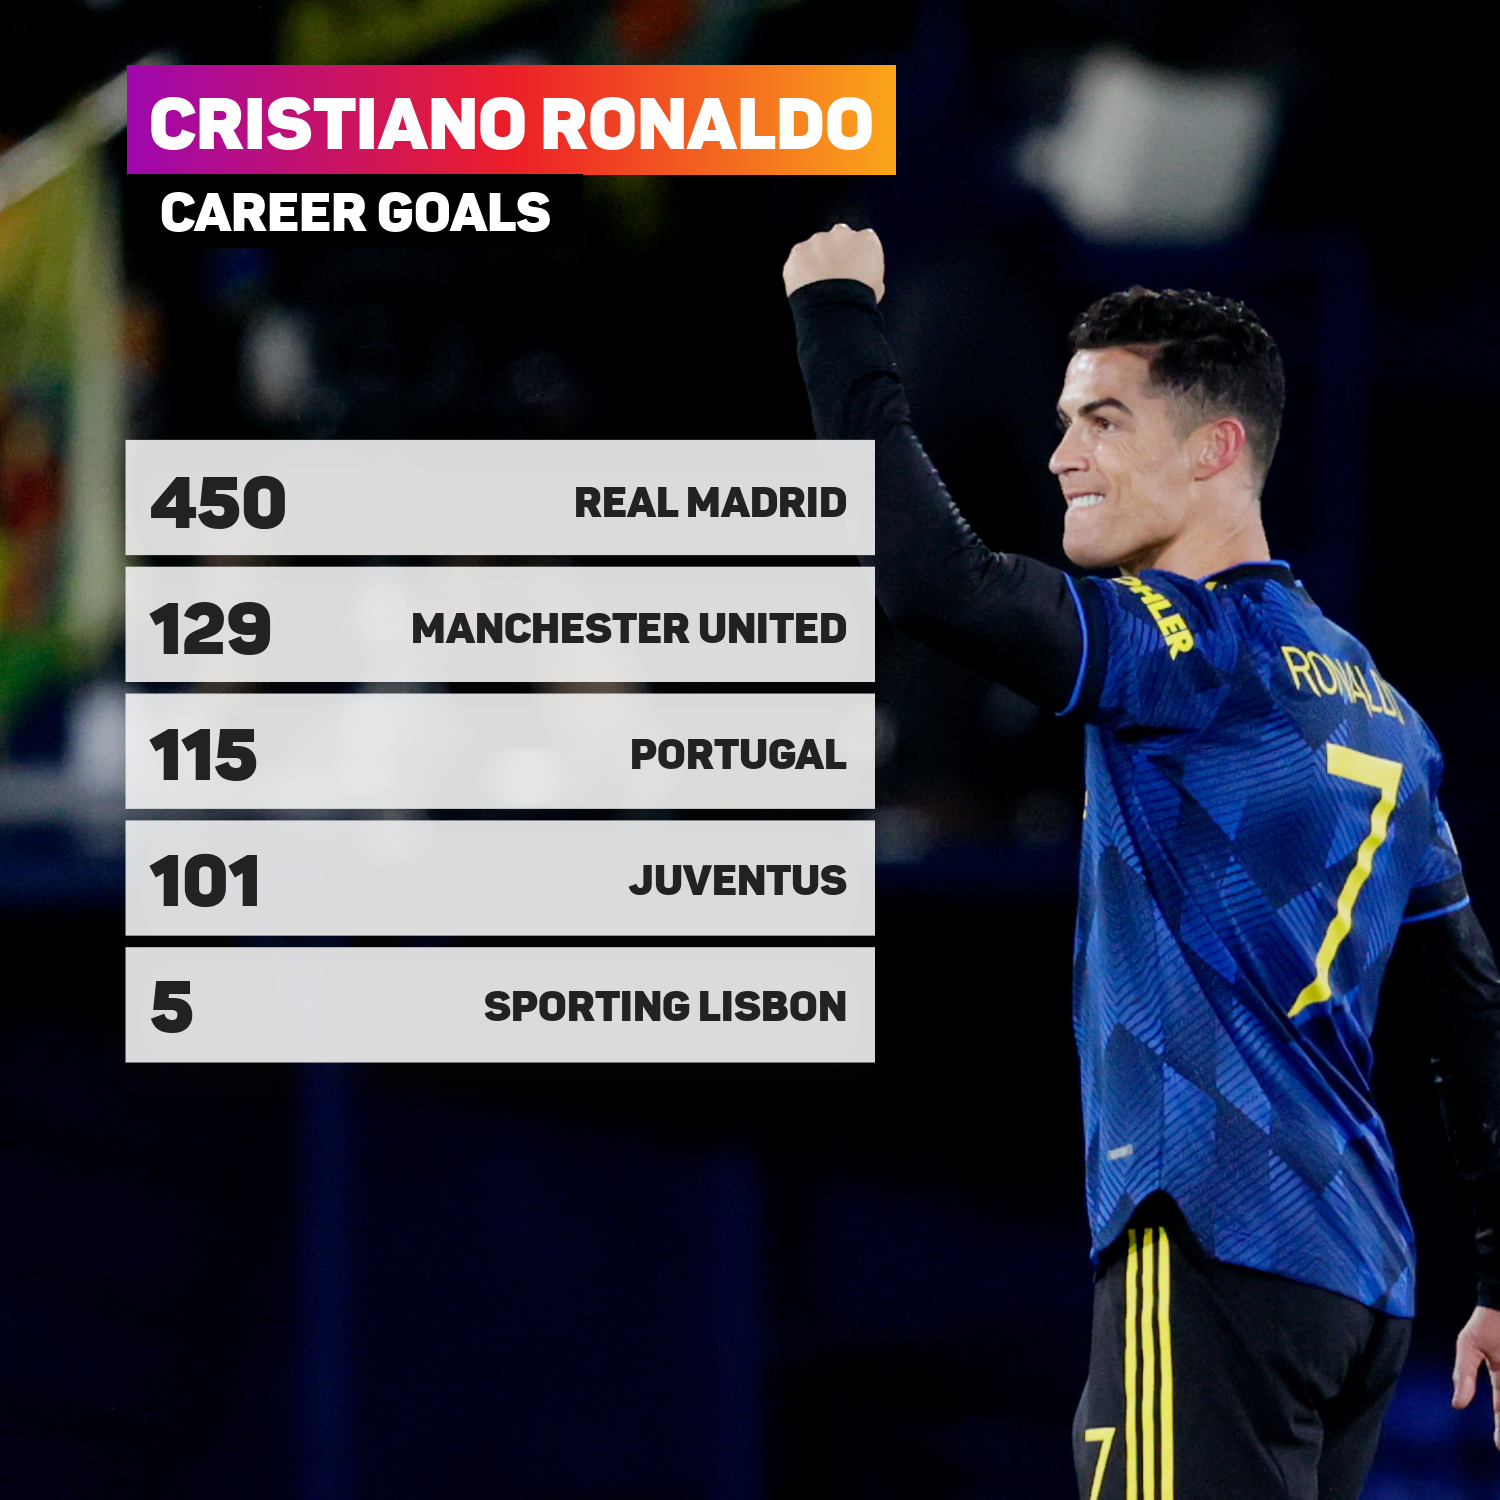 Ronaldo career goals